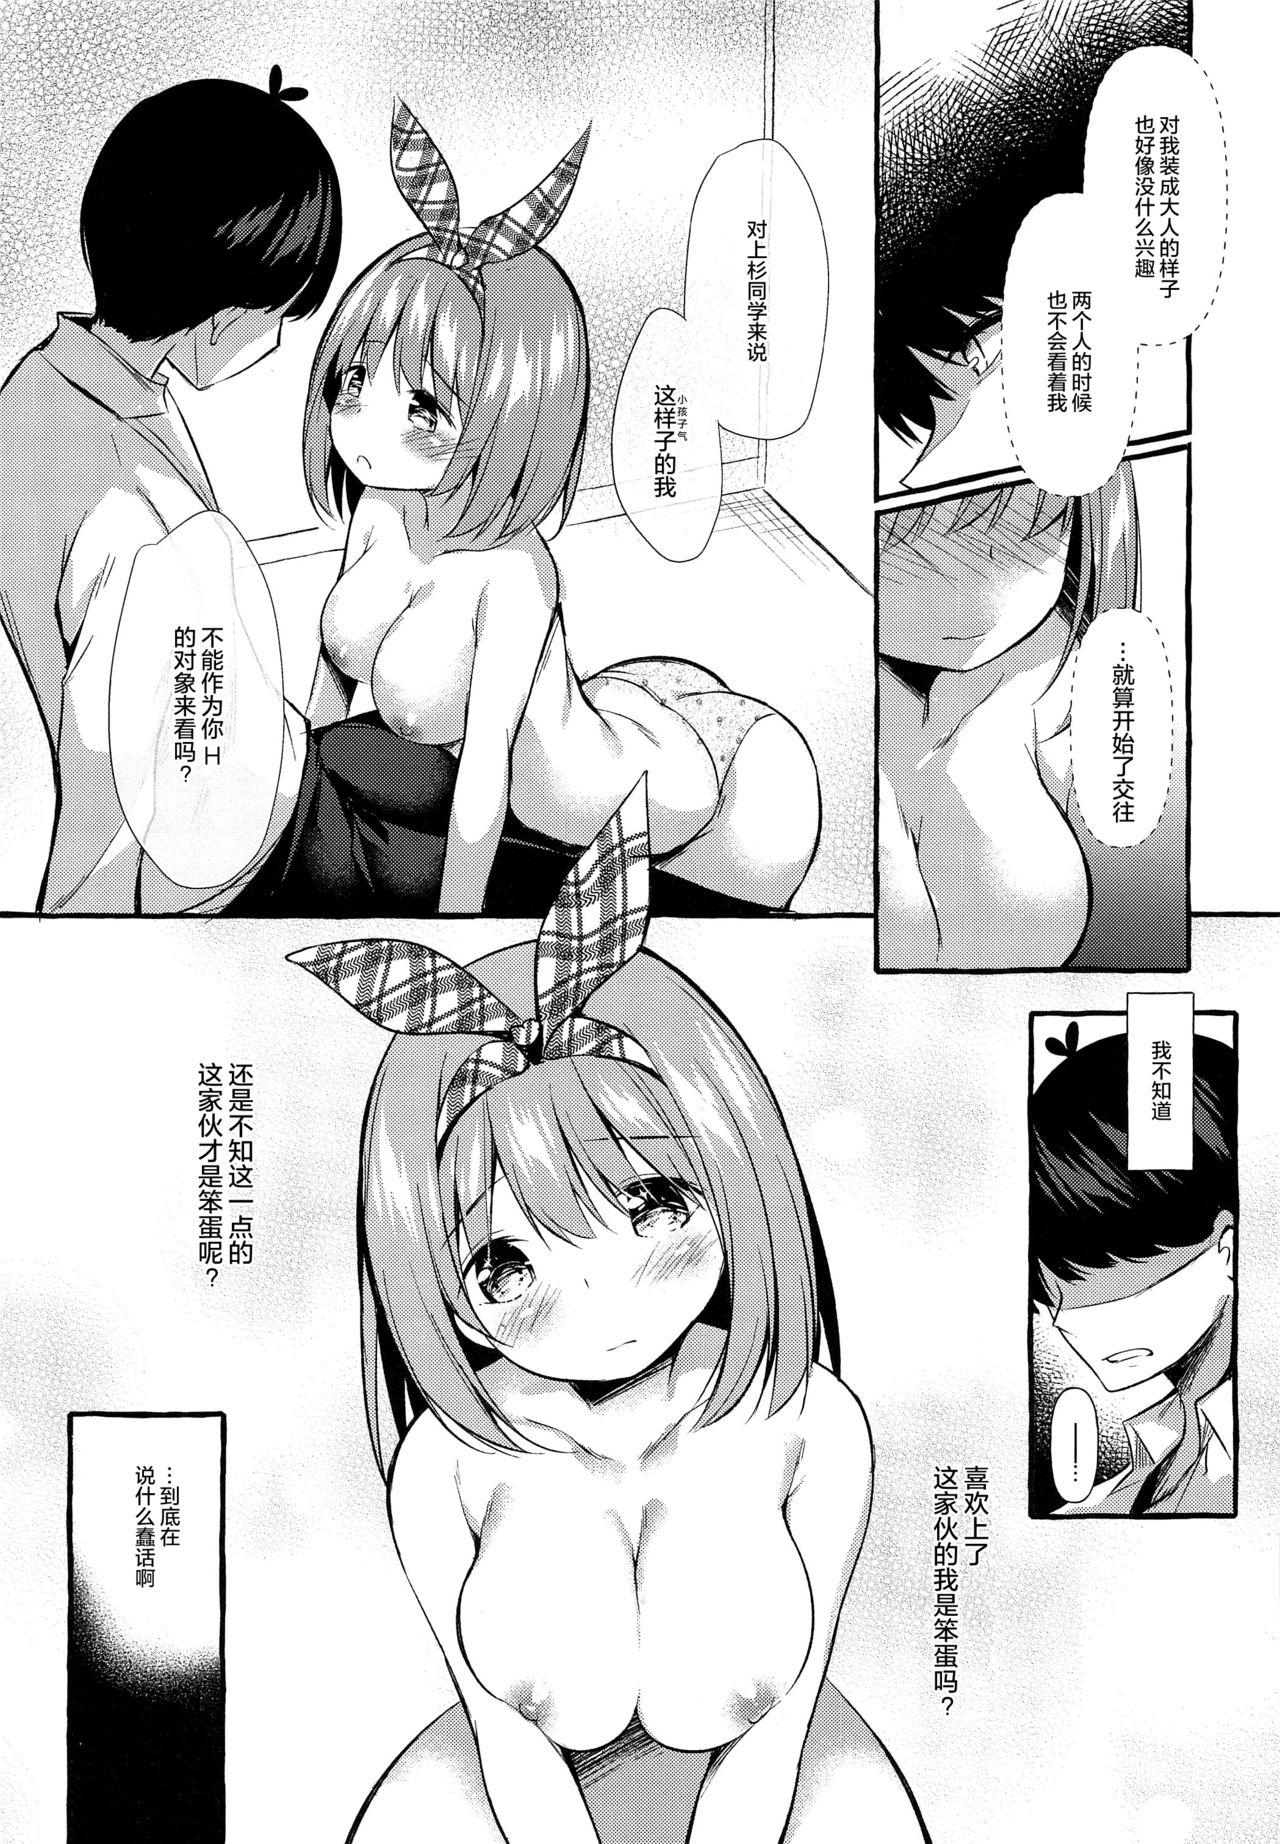 Time Yotsuba to Shichakushitsu de H Shiyo - Gotoubun no hanayome Adolescente - Page 13